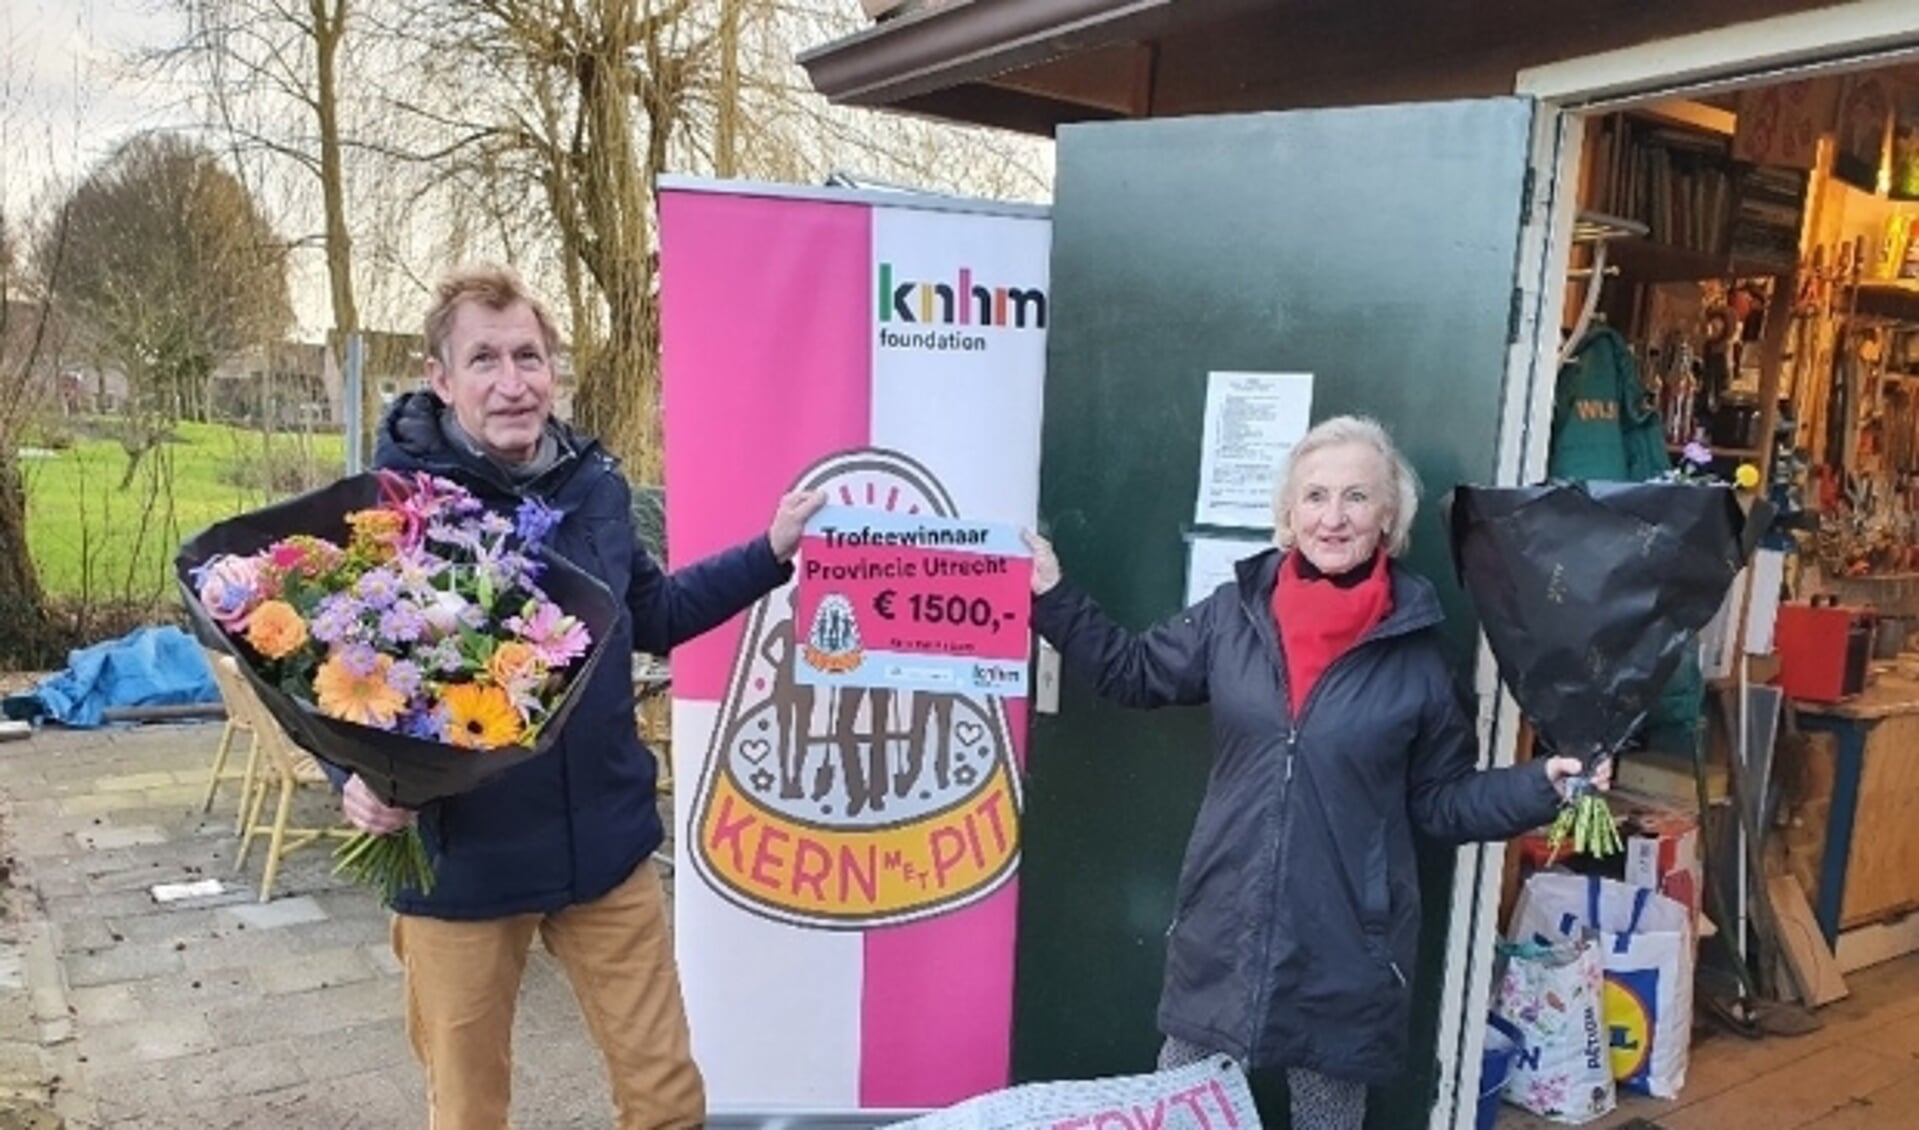 Karen den Hartog en Ton van Oostveen nemen de prijscheque van Kern met Pit in ontvangst. Foto: Kern met Pit